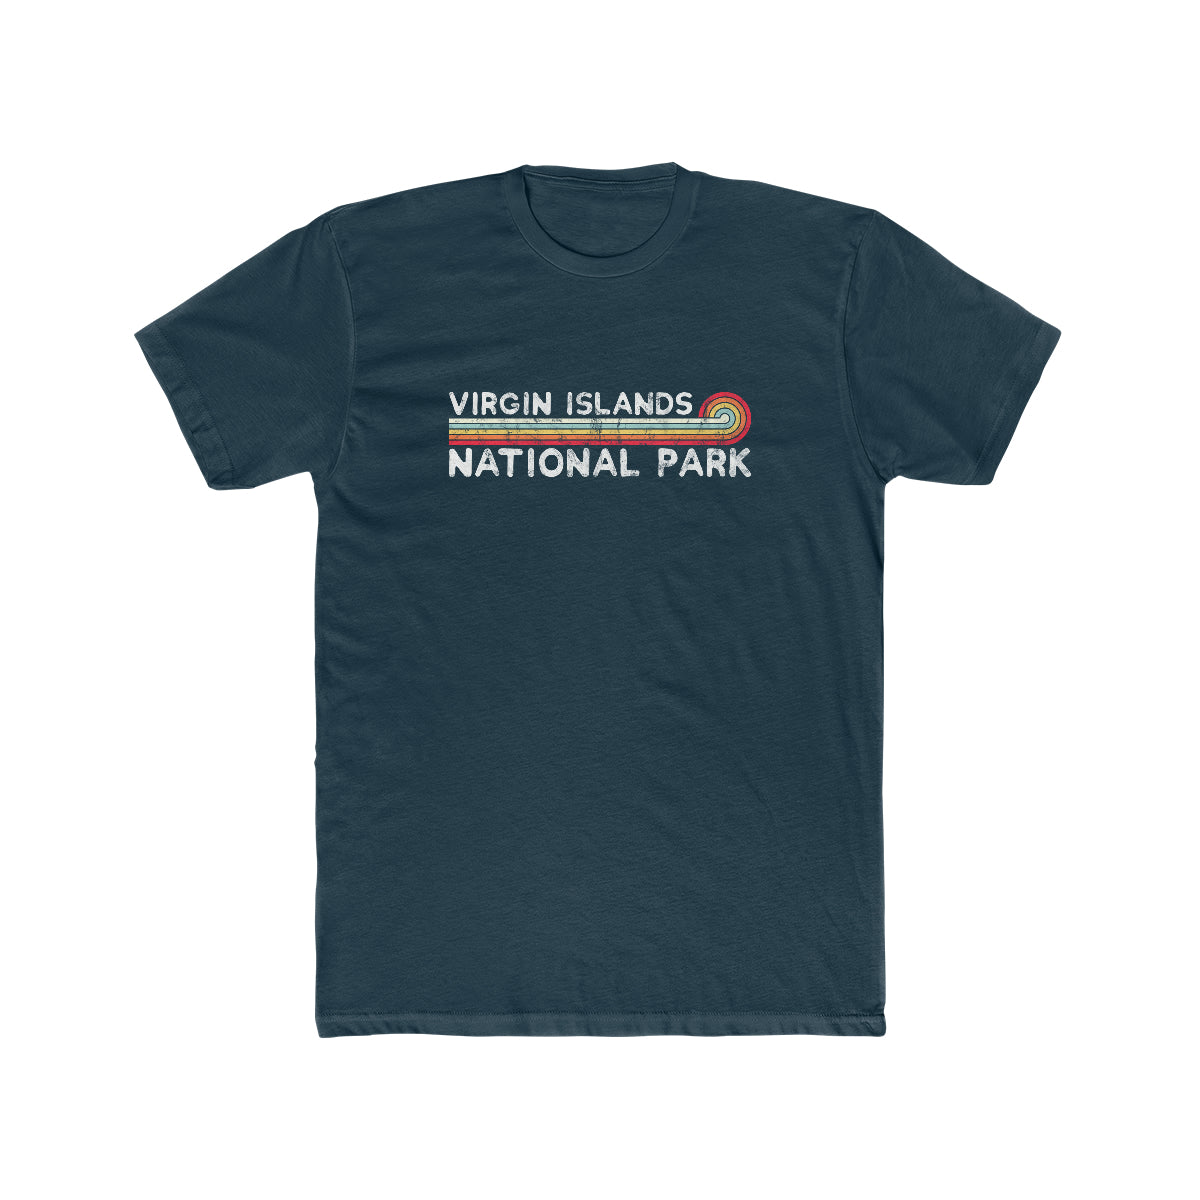 Virgin Islands National Park T-Shirt - Vintage Stretched Sunrise